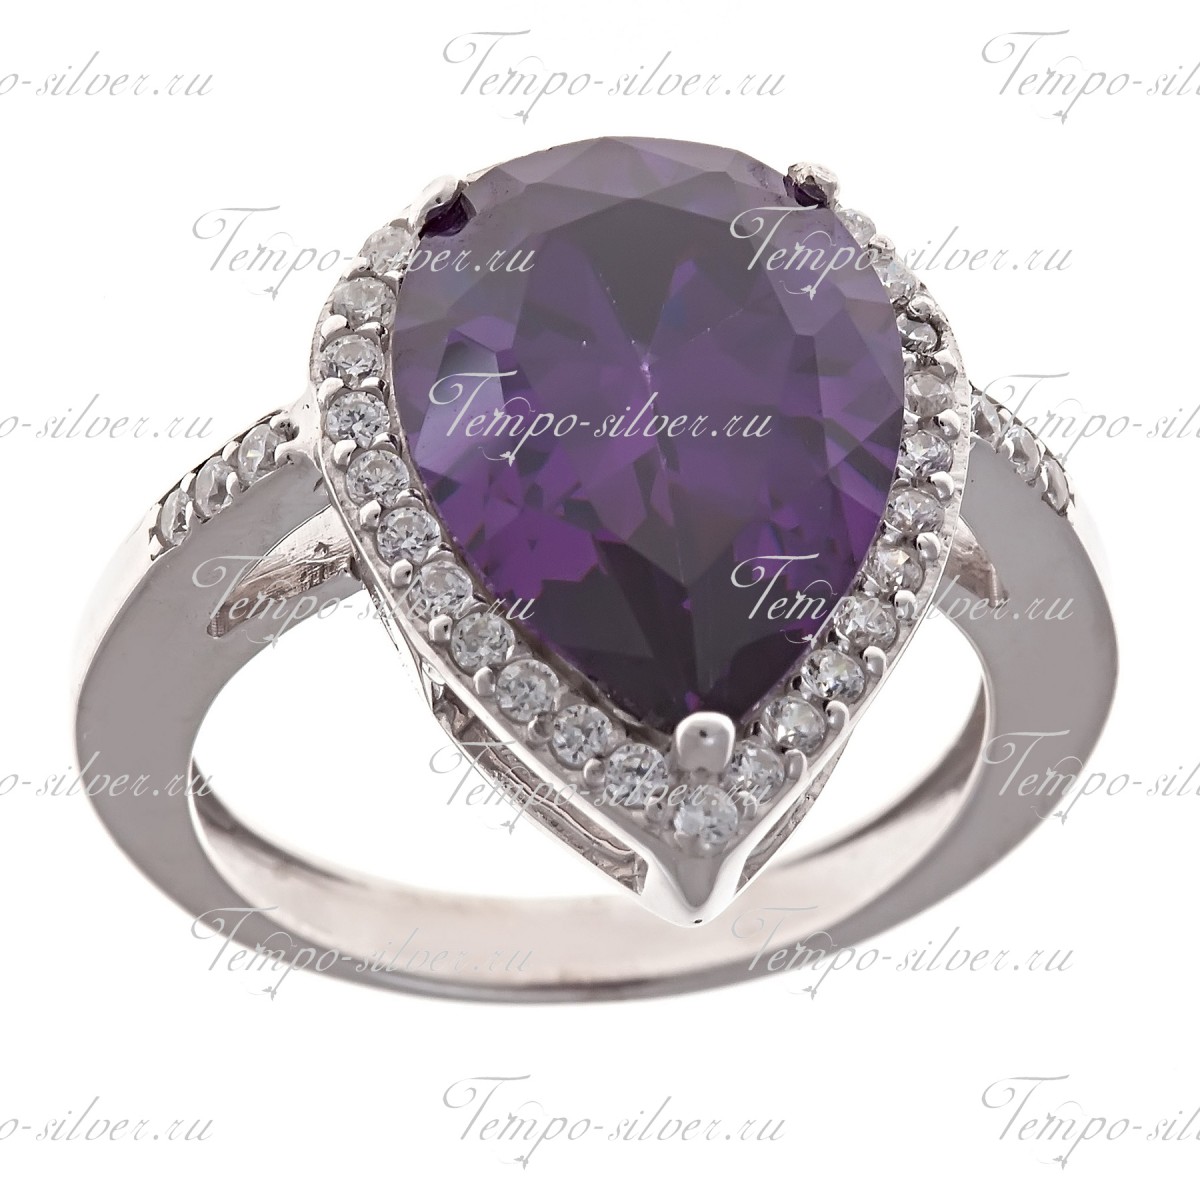 Кольцо из серебра с крупным фиолетовым камнем каплевидной формы, окруженный белыми камнями цена